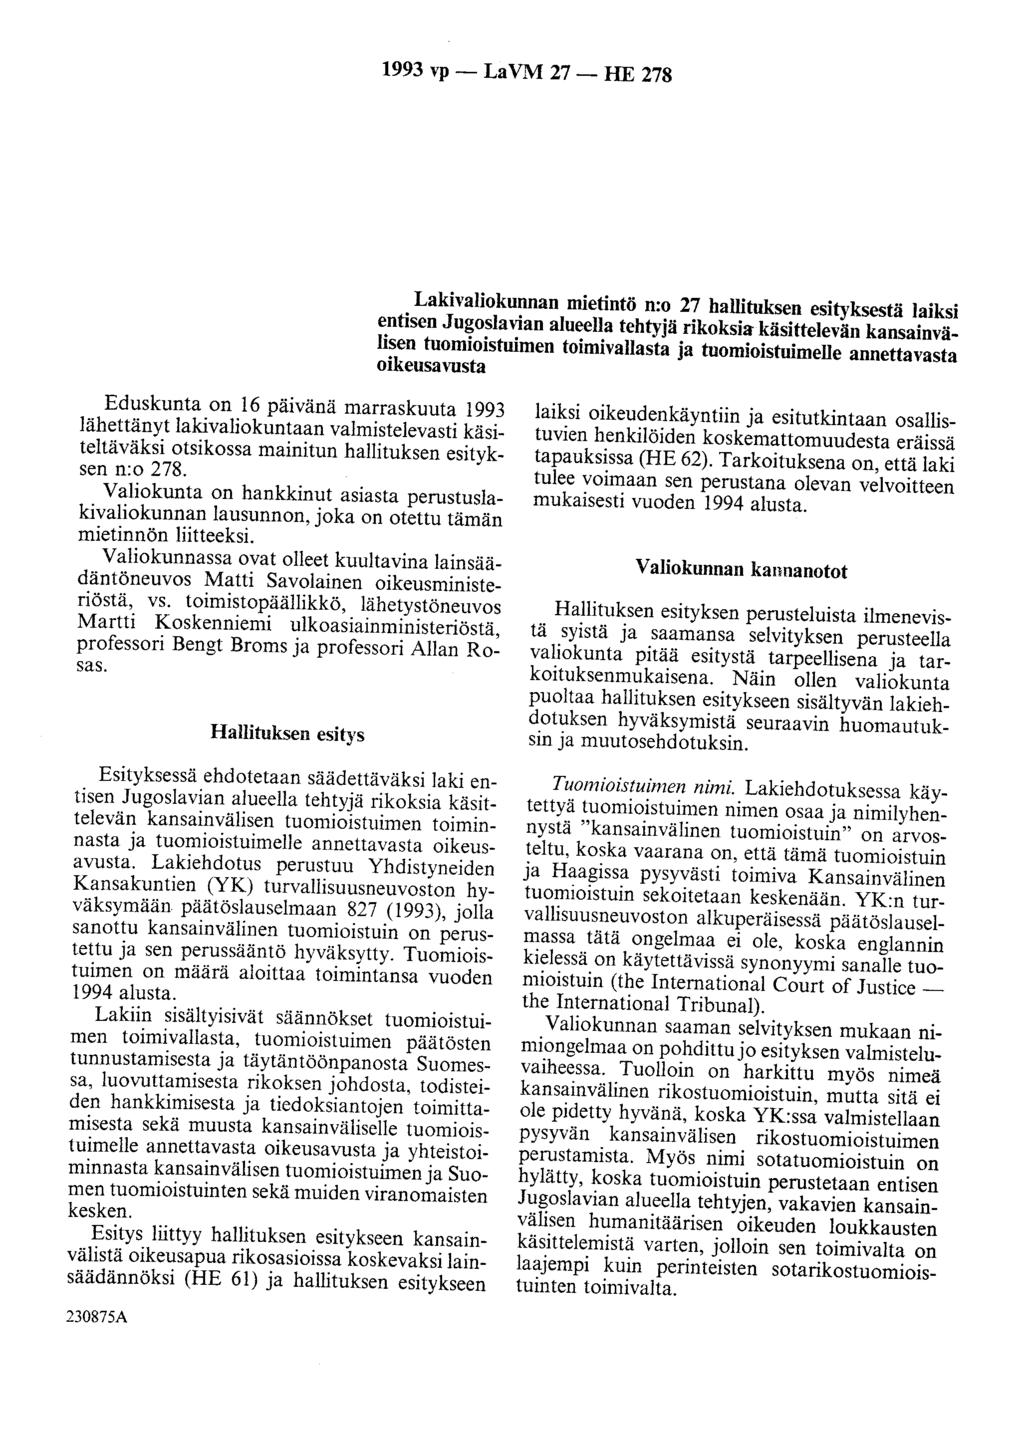 1993 vp - La VM 27 - HE 278 Lakivaliokunnan mietintö n:o 27 hallituksen esityksestä laiksi entisen Jugoslavian alueella tehtyjä rikoksia käsittelevän kansainvälisen tuomioistuimen toimivallasta ja